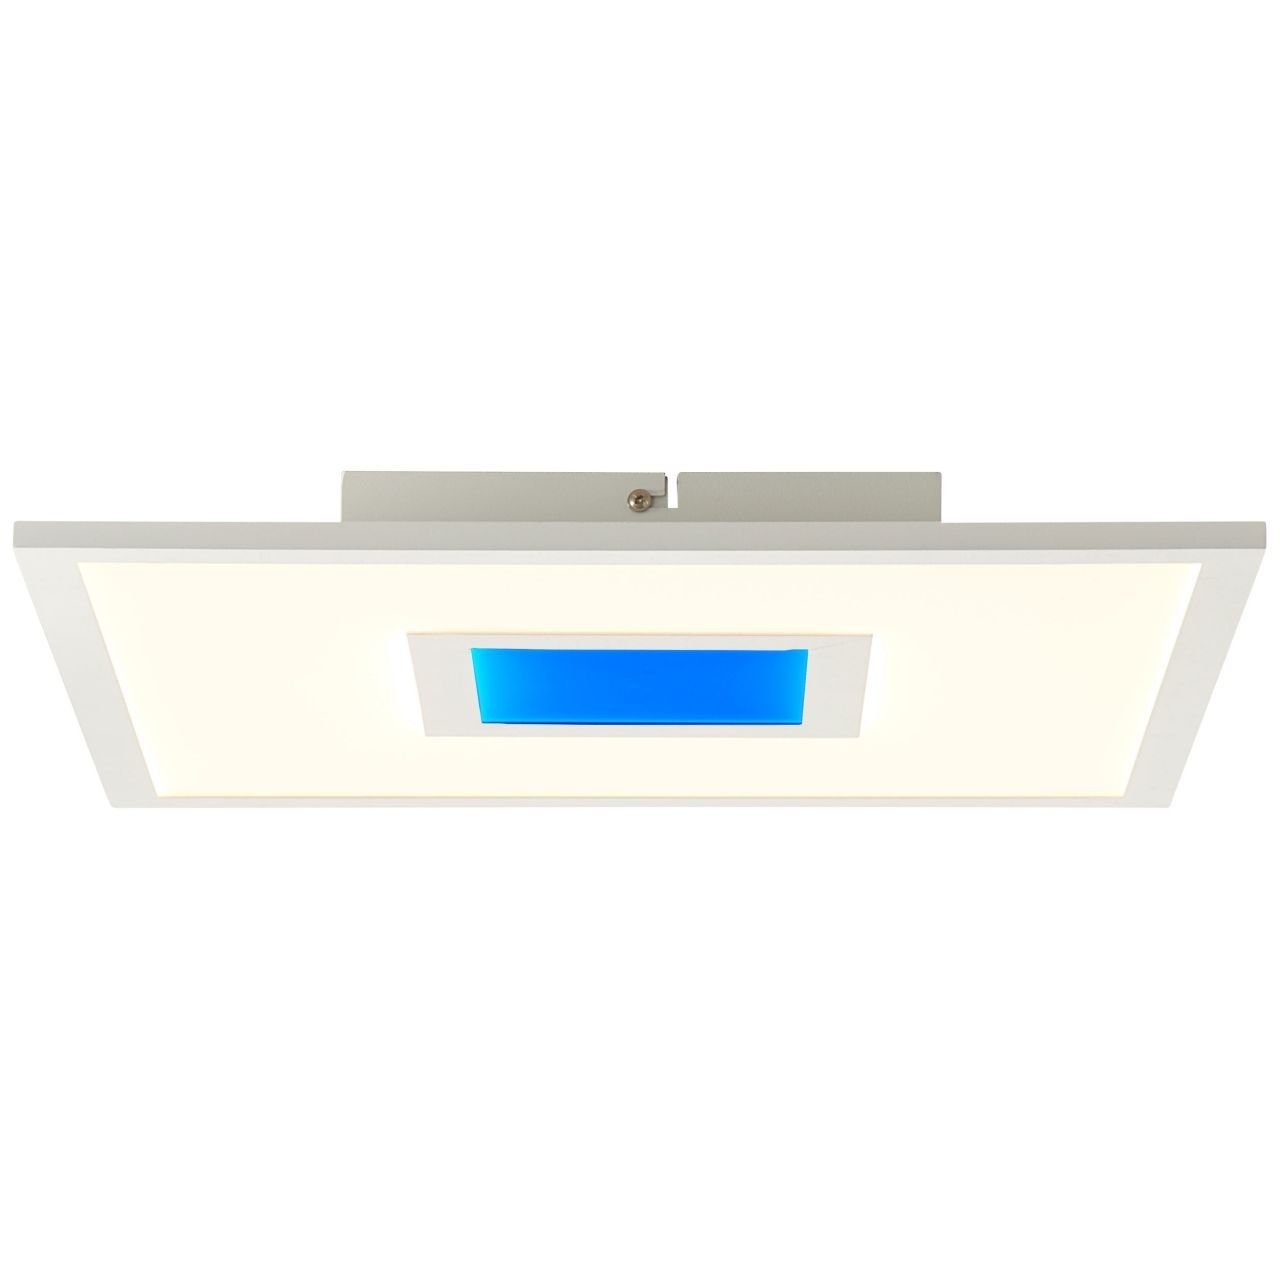 für integri, Odella 40x40cm LED Akzentbeleuchtung Paneel Brilliant weiß farbenfrohe 1x RGB-Dekolicht LED 2700-6500K, 25W Deckenaufbau- Aufbauleuchte Odella, Lampe